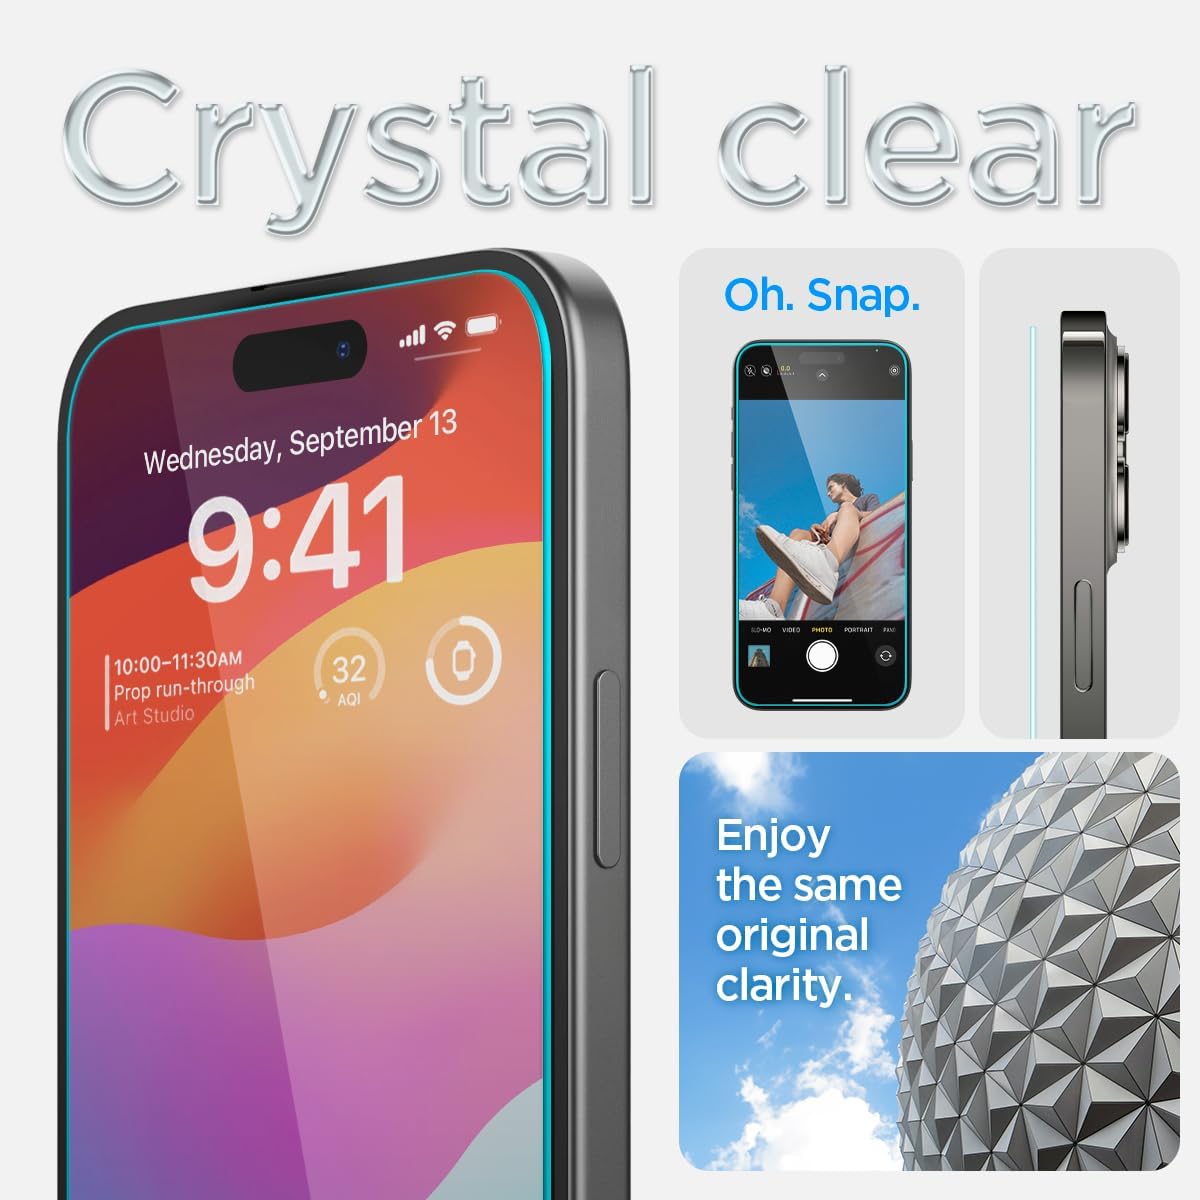 Spigen Tempered Glass Screen Protector [GlasTR EZ FIT] designed for iPhone 15 Plus [2 Pack]